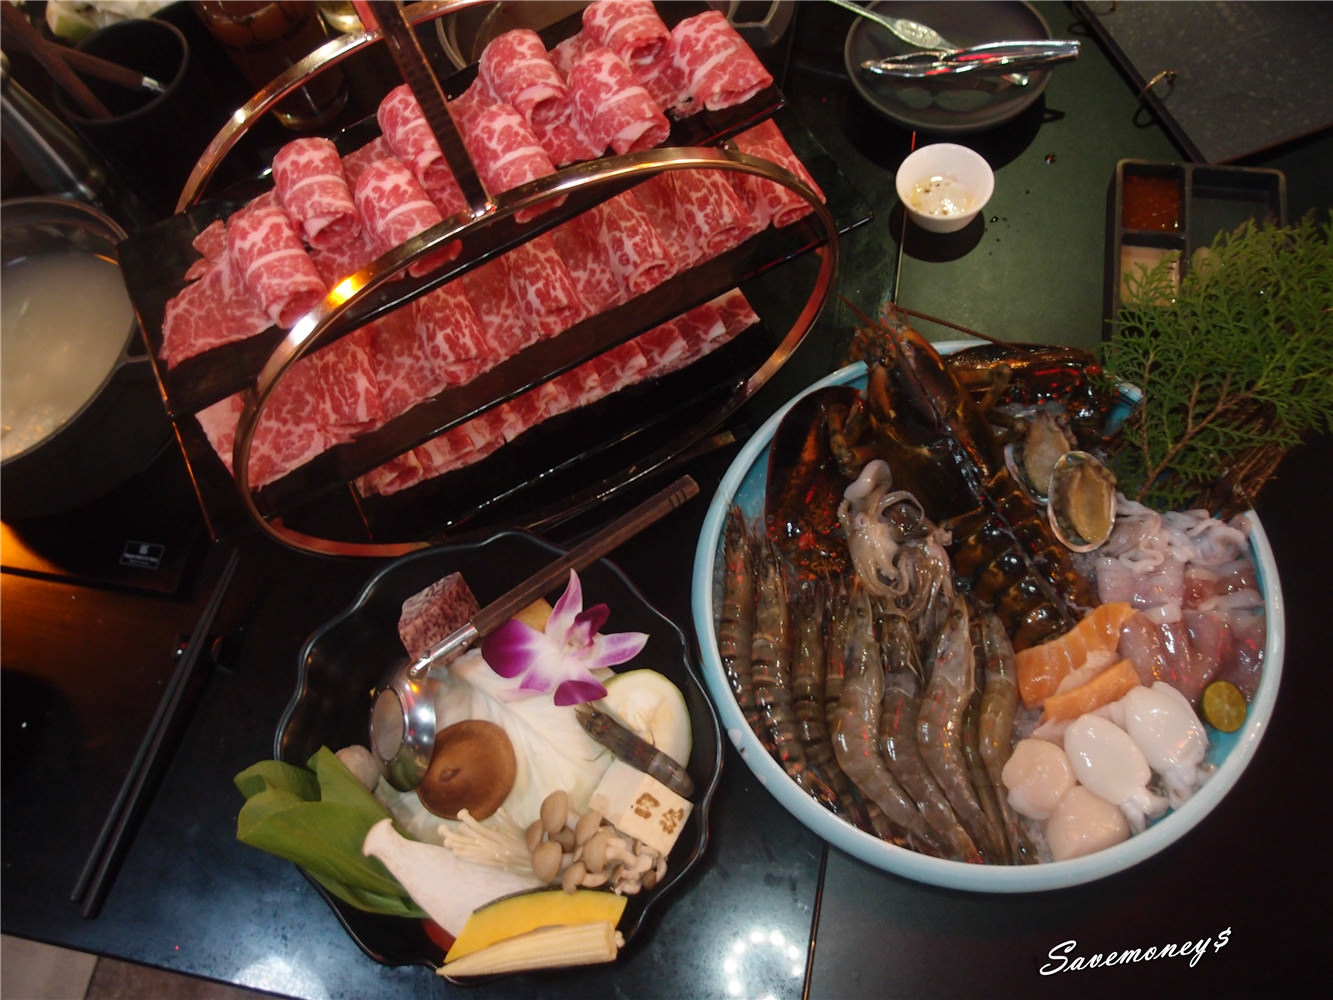 【台中美食祭】肉魂鑄鐵料理~波士頓龍蝦+安格斯牛肉,雙人經典套餐大滿足!